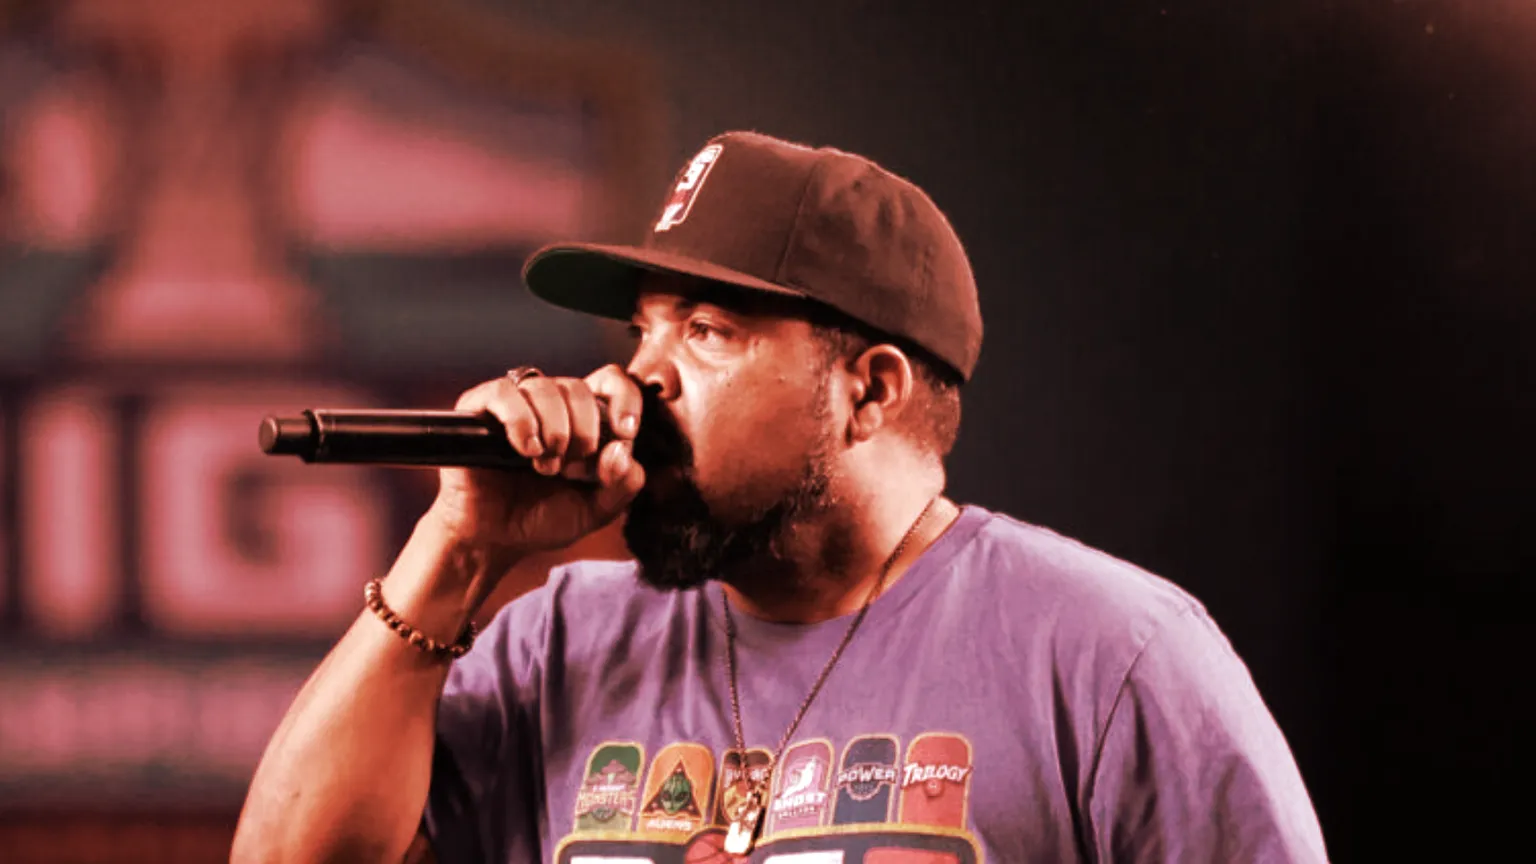 El rapero y cofundador de la liga BIG3, Ice Cube. Imagen: BIG3